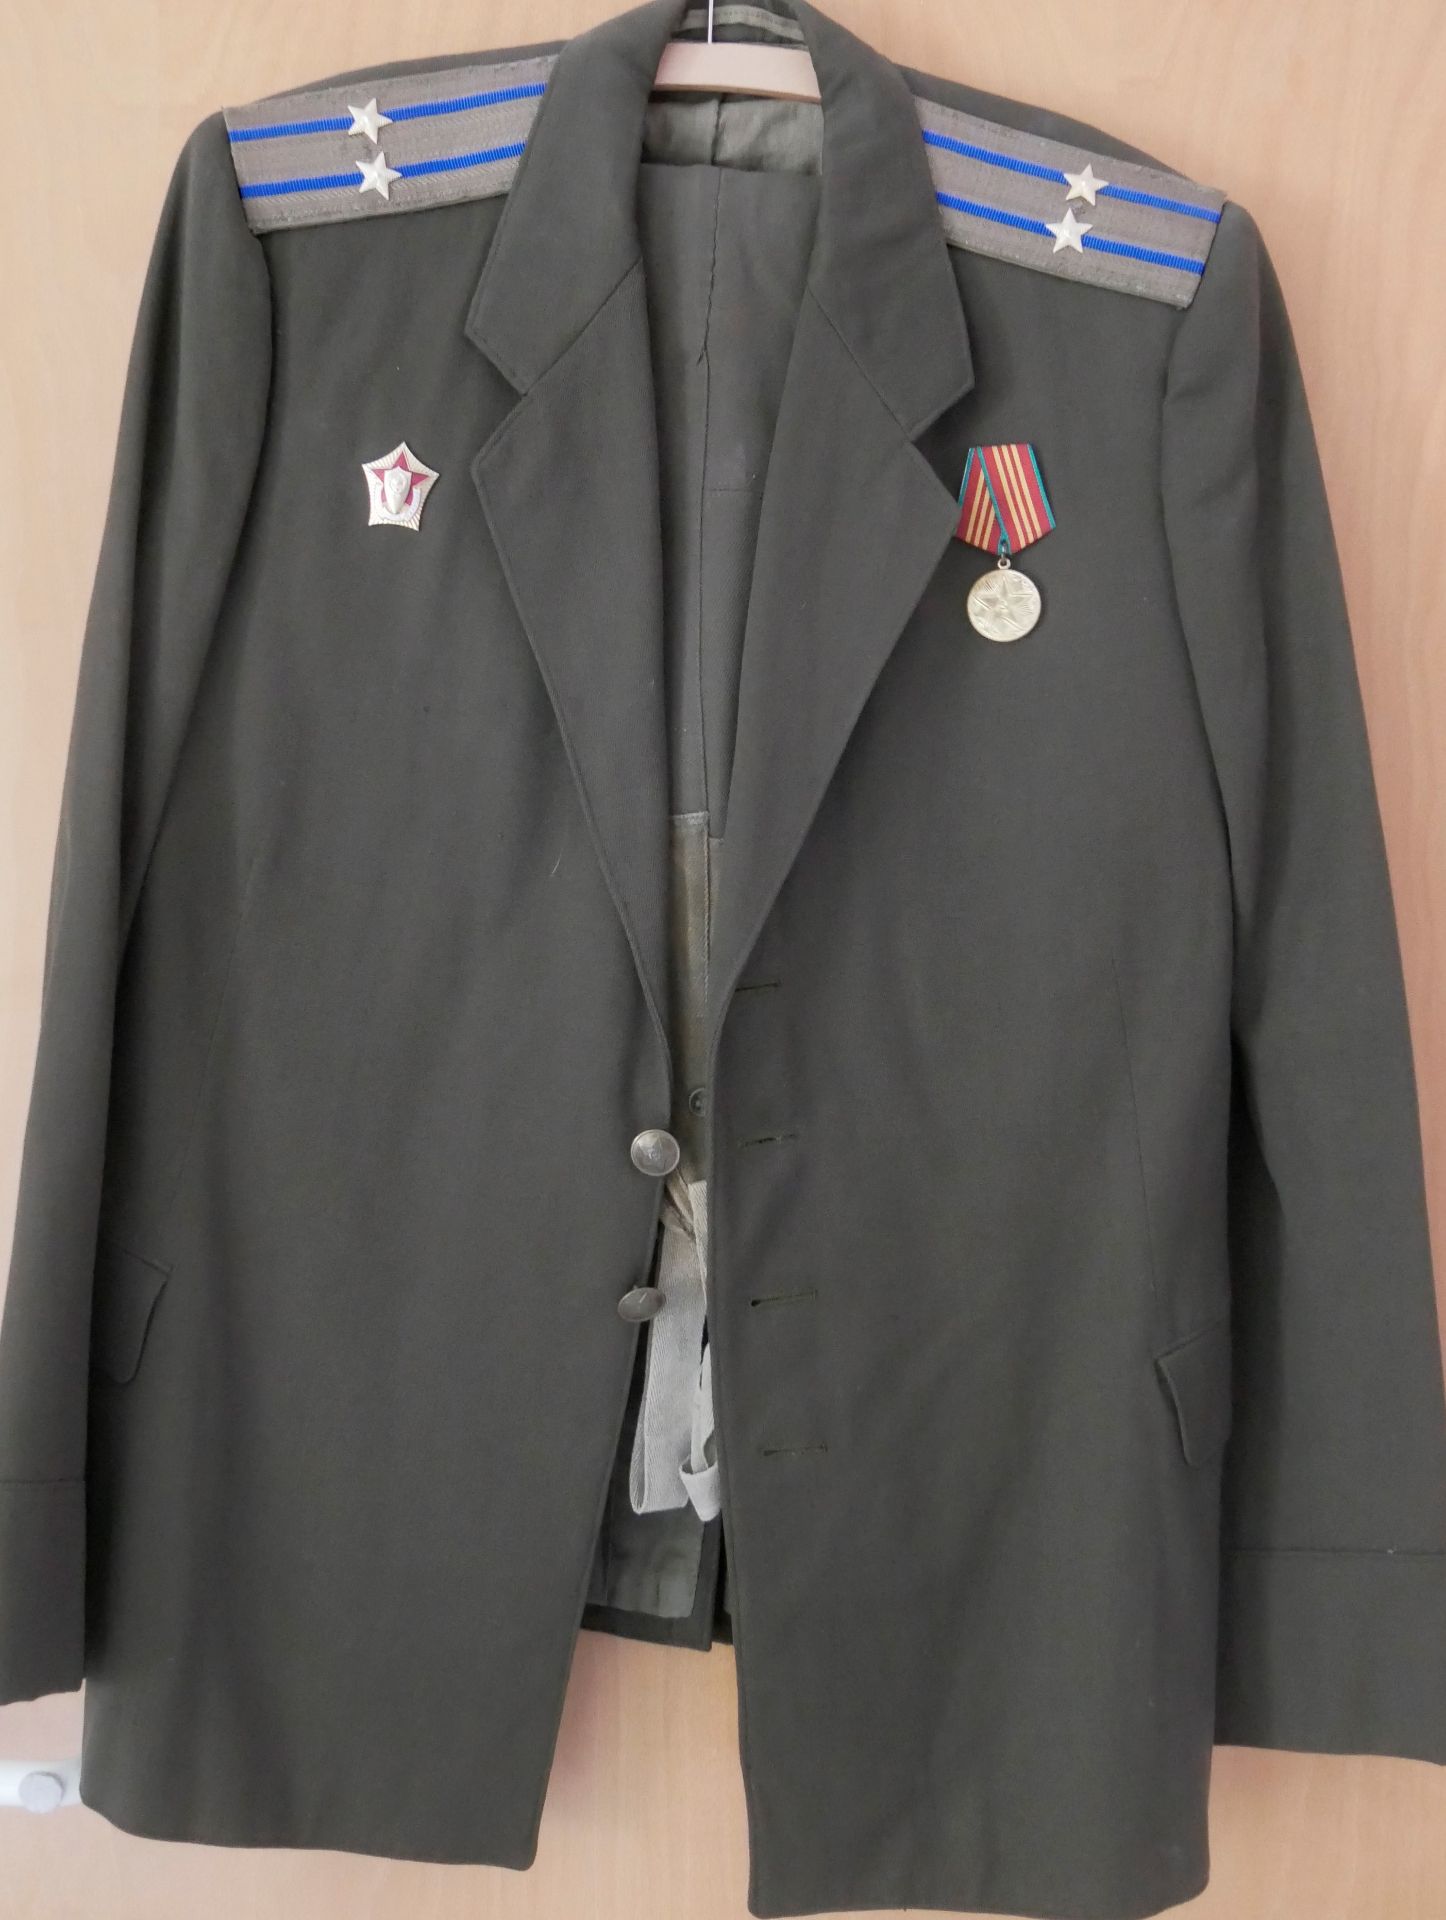 Aus Sammelauflösung! UDSSR Uniform Jacke mit Effekten und Orden, sowie passender Hose. Gebrauchter